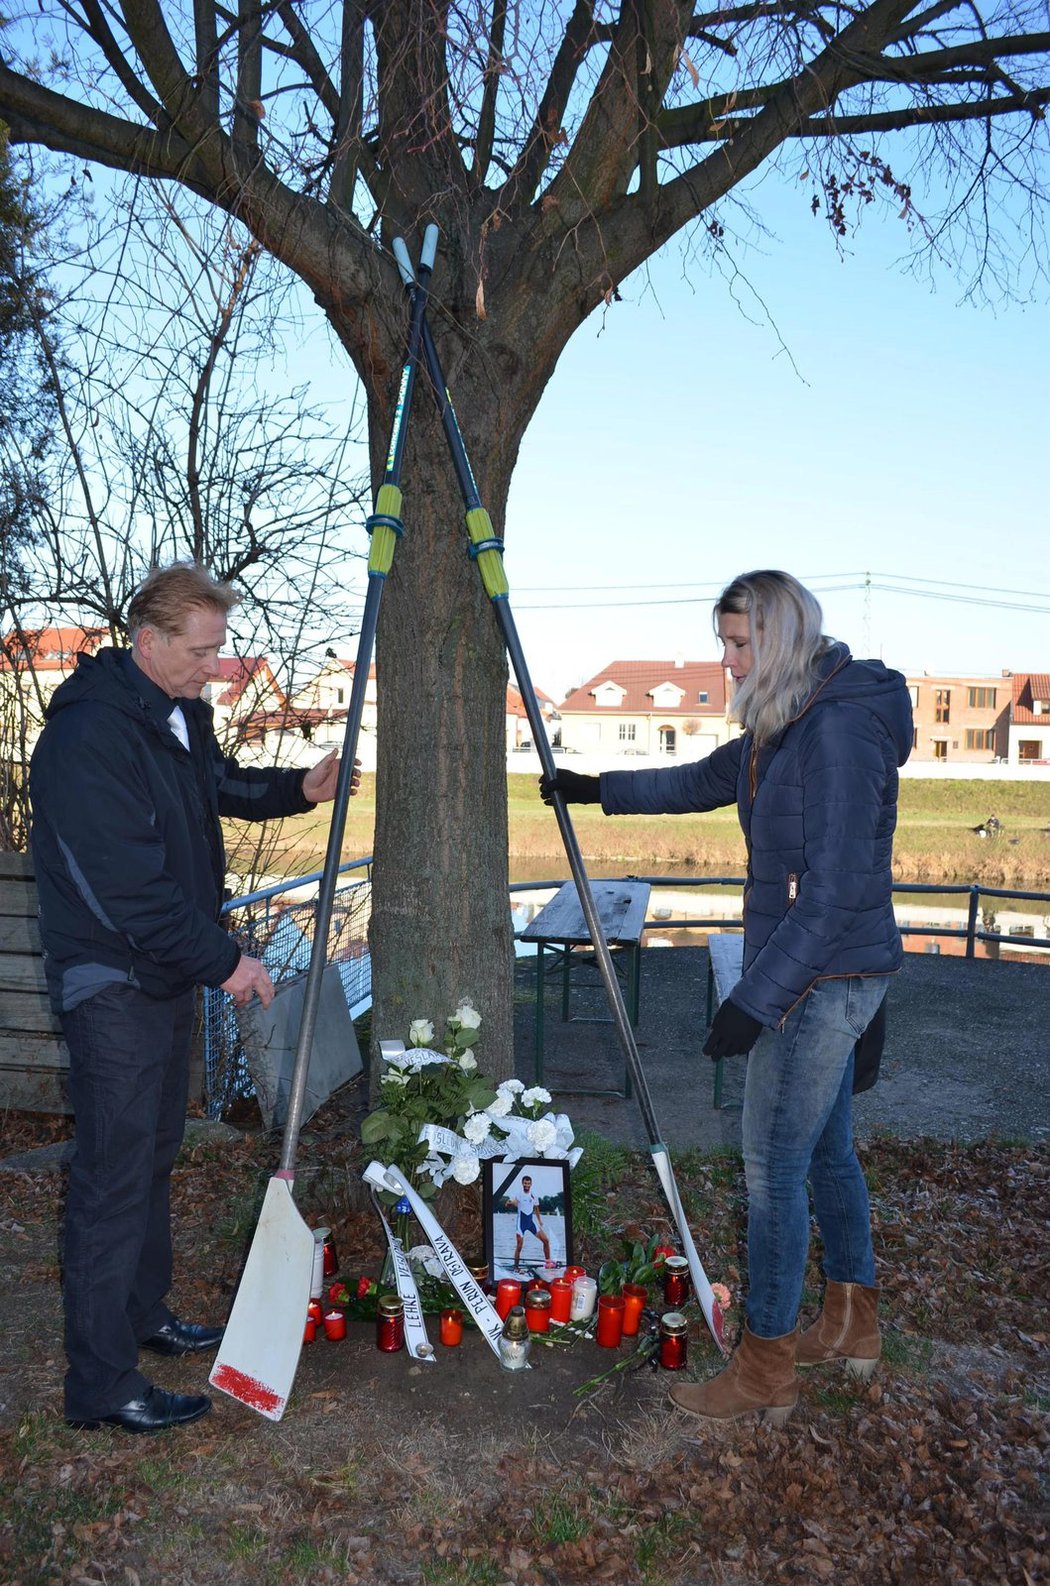 Tragicky zesnulého parťáka a kamaráda Michala Plocka si lidé připomněli v Uherském Hradišti